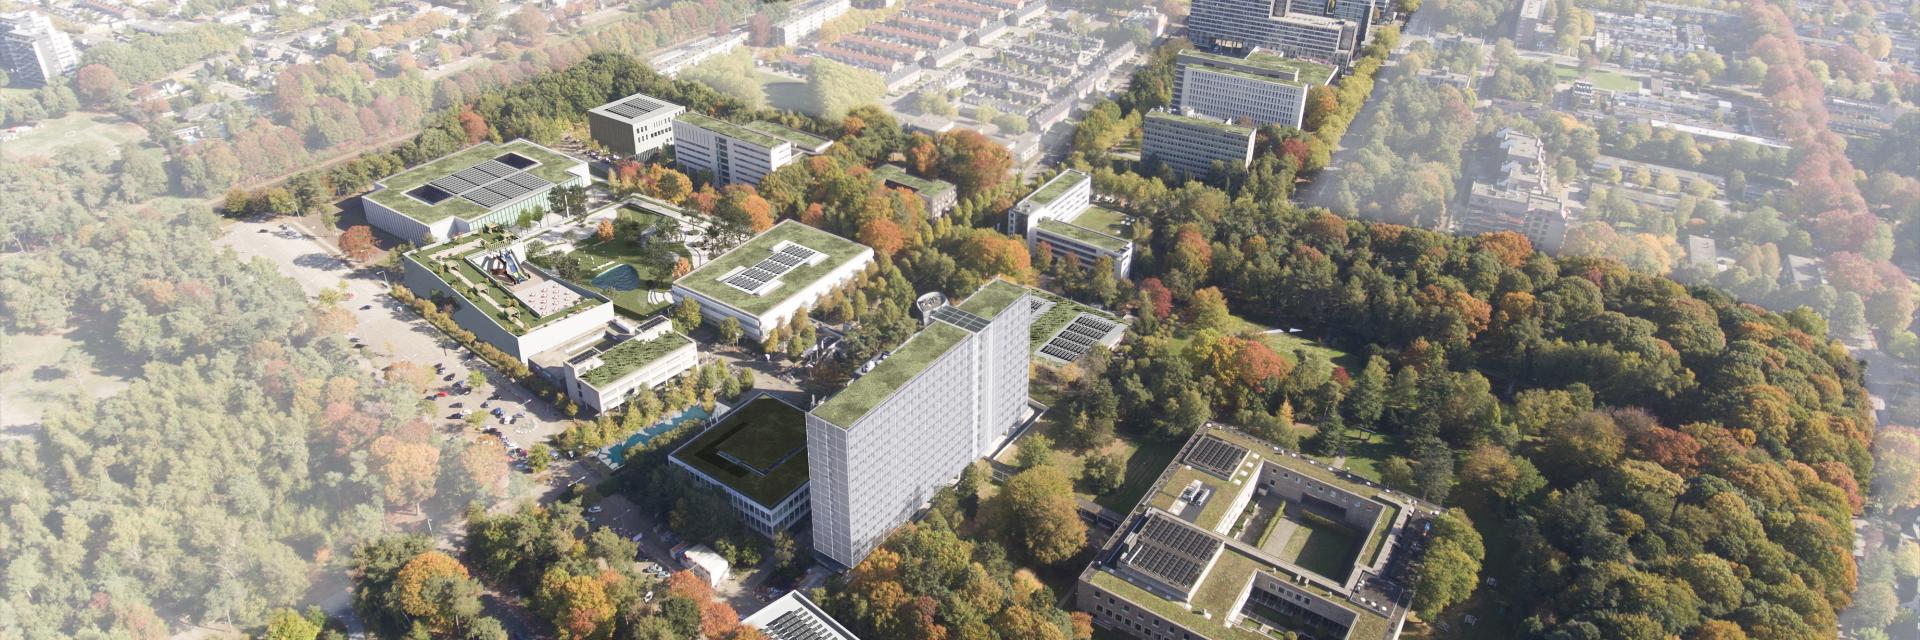 De compacte, groene campus van Tilburg University